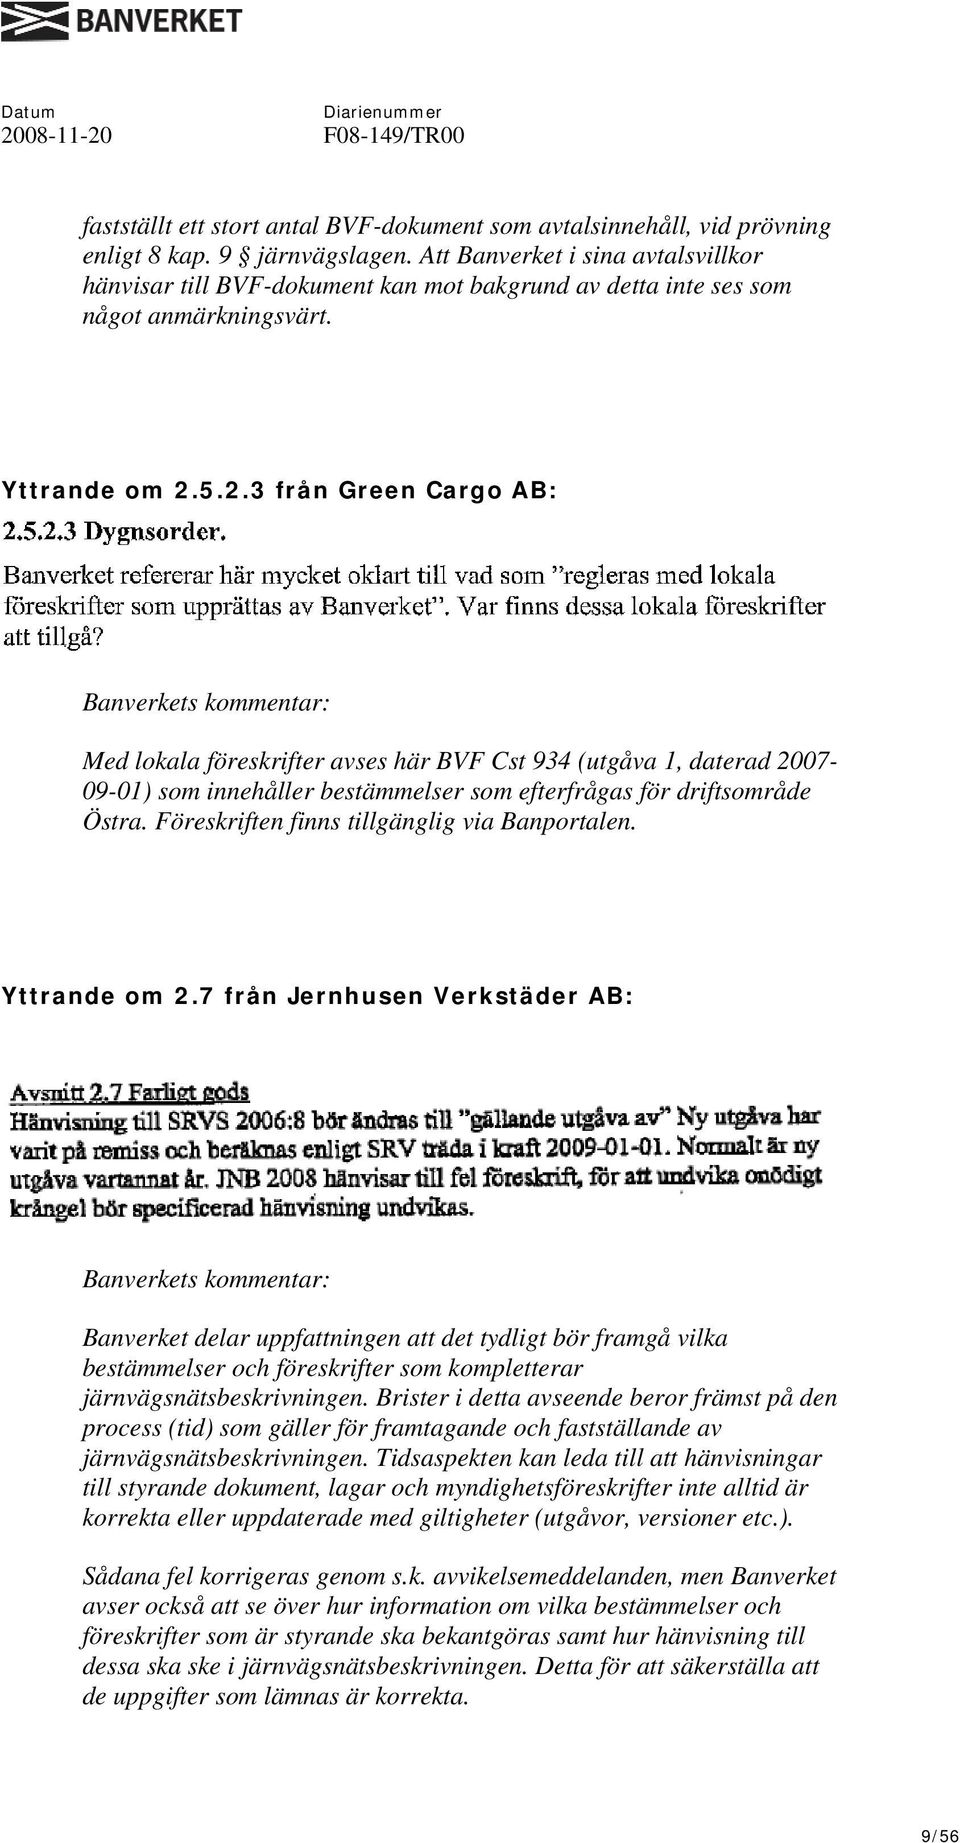 5.2.3 från Green Cargo AB: Med lokala föreskrifter avses här BVF Cst 934 (utgåva 1, daterad 2007-09-01) som innehåller bestämmelser som efterfrågas för driftsområde Östra.